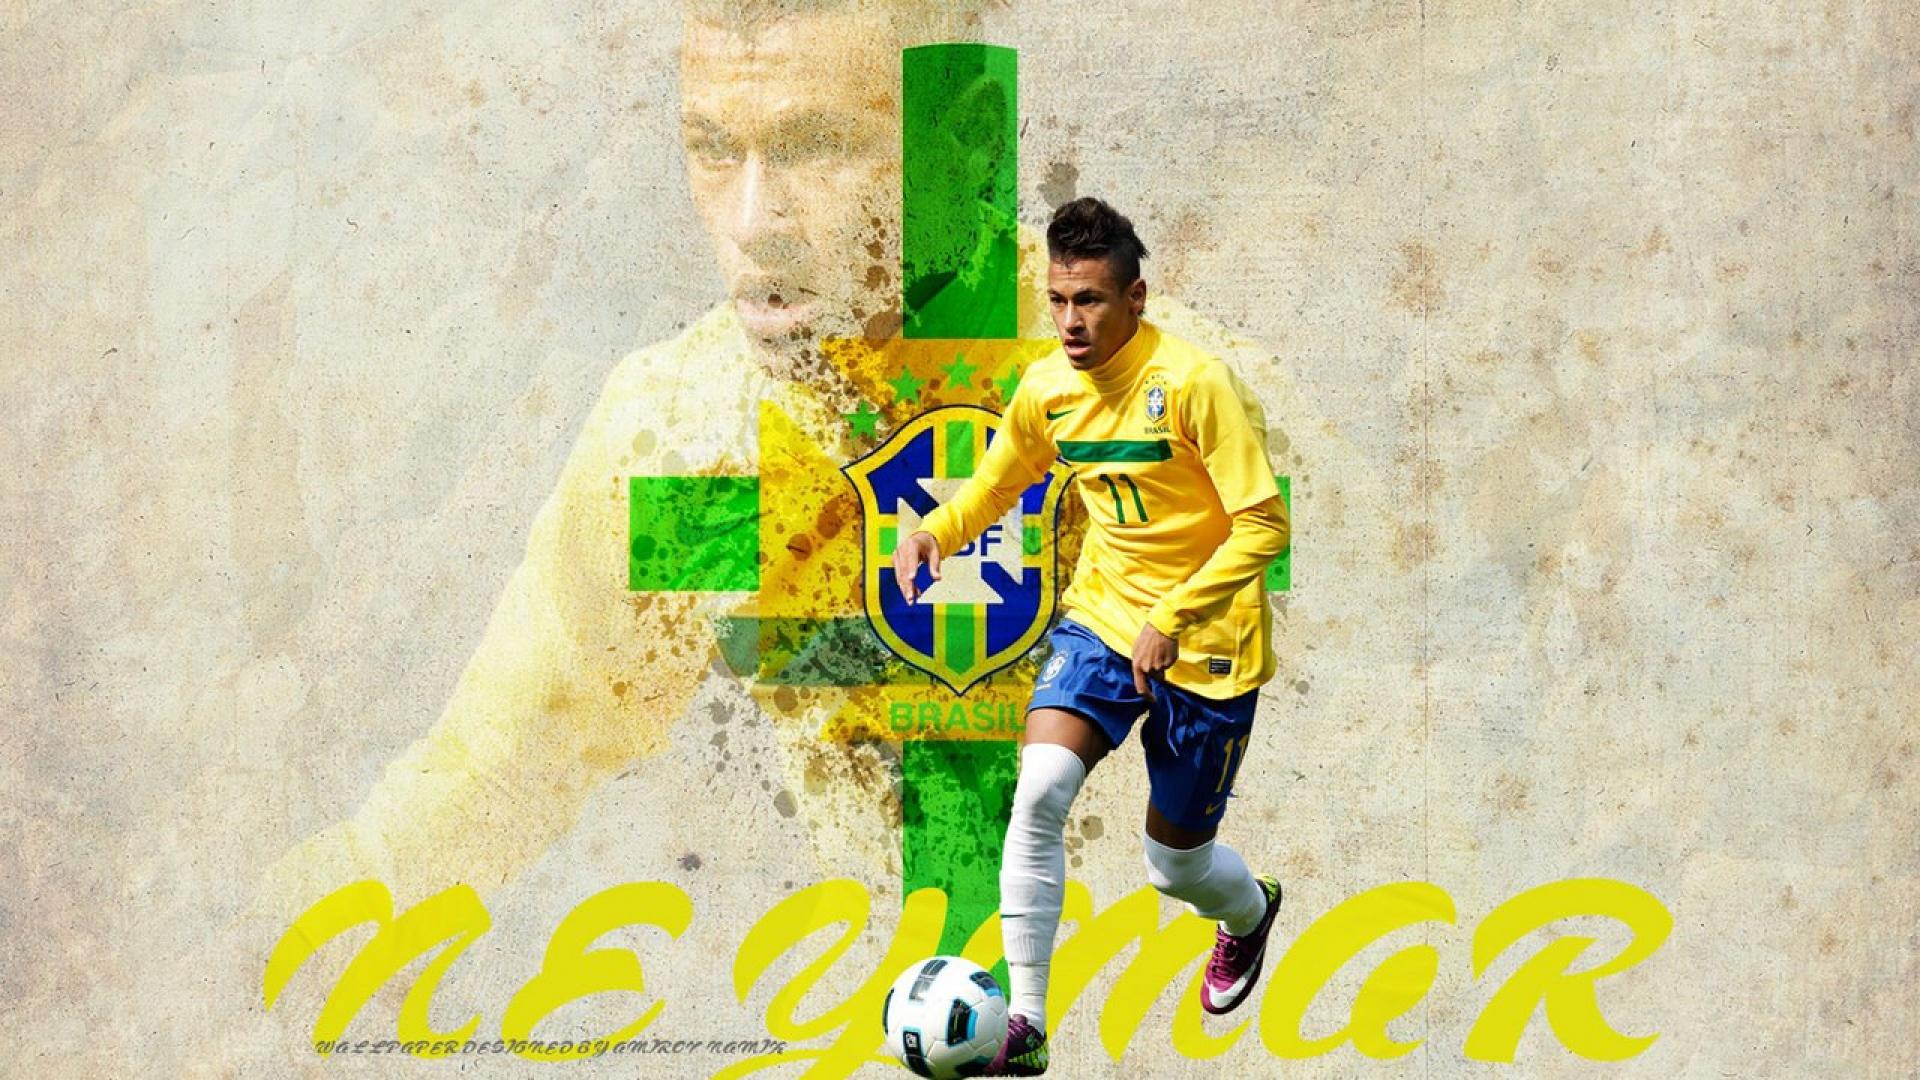 neymar wallpaper download,football player,player,soccer player,football,team sport